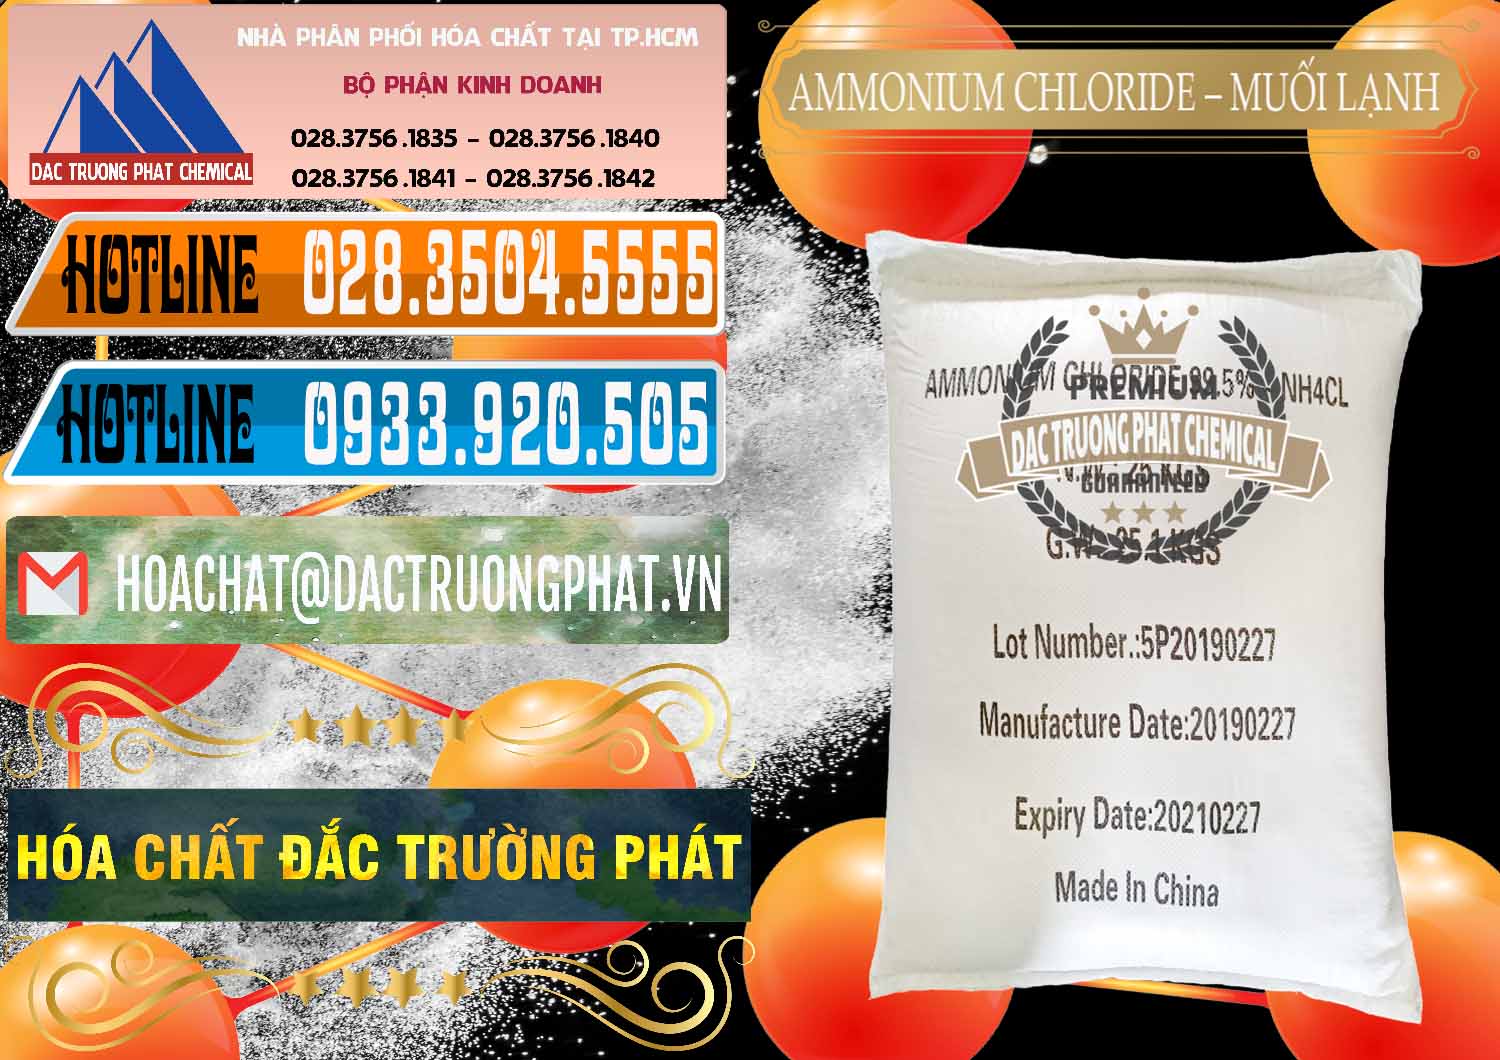 Đơn vị chuyên bán ( cung cấp ) Ammonium Chloride - Muối Lạnh NH4CL Trung Quốc China - 0021 - Nơi chuyên kinh doanh - cung cấp hóa chất tại TP.HCM - stmp.net